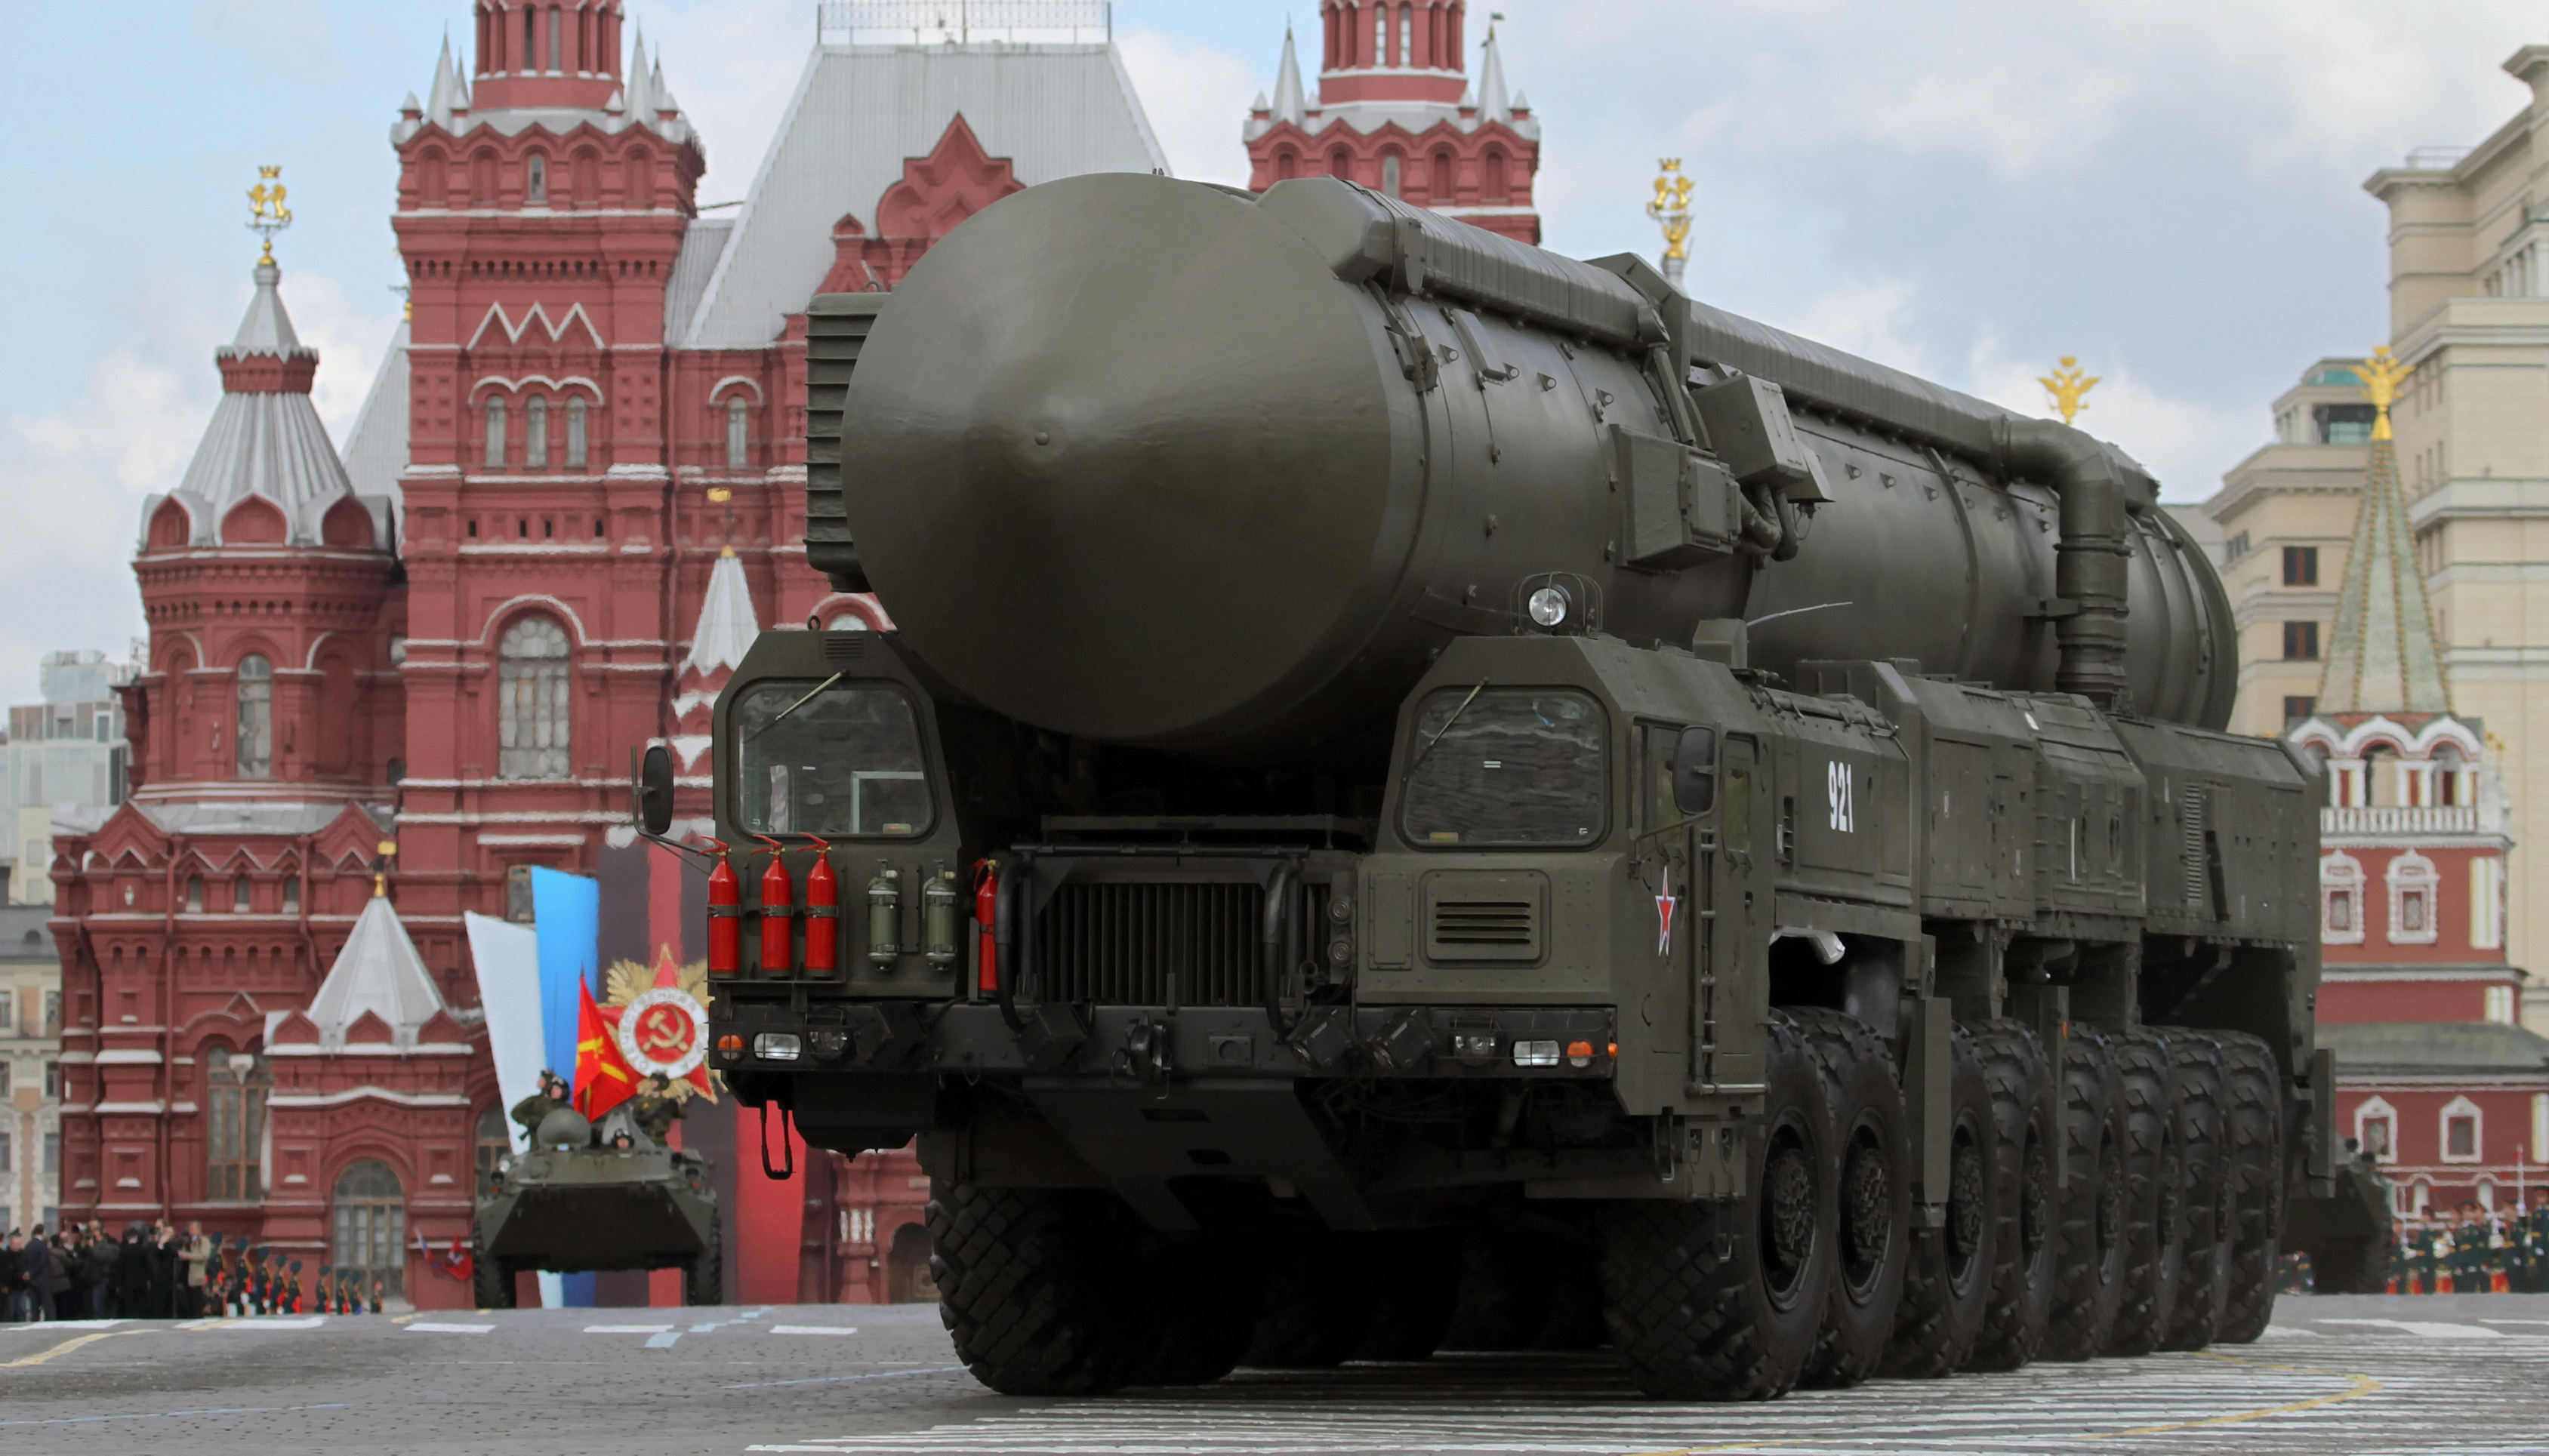 Washington - Russland werfen USA vor, Basis für Atomwaffen-Abkommen 